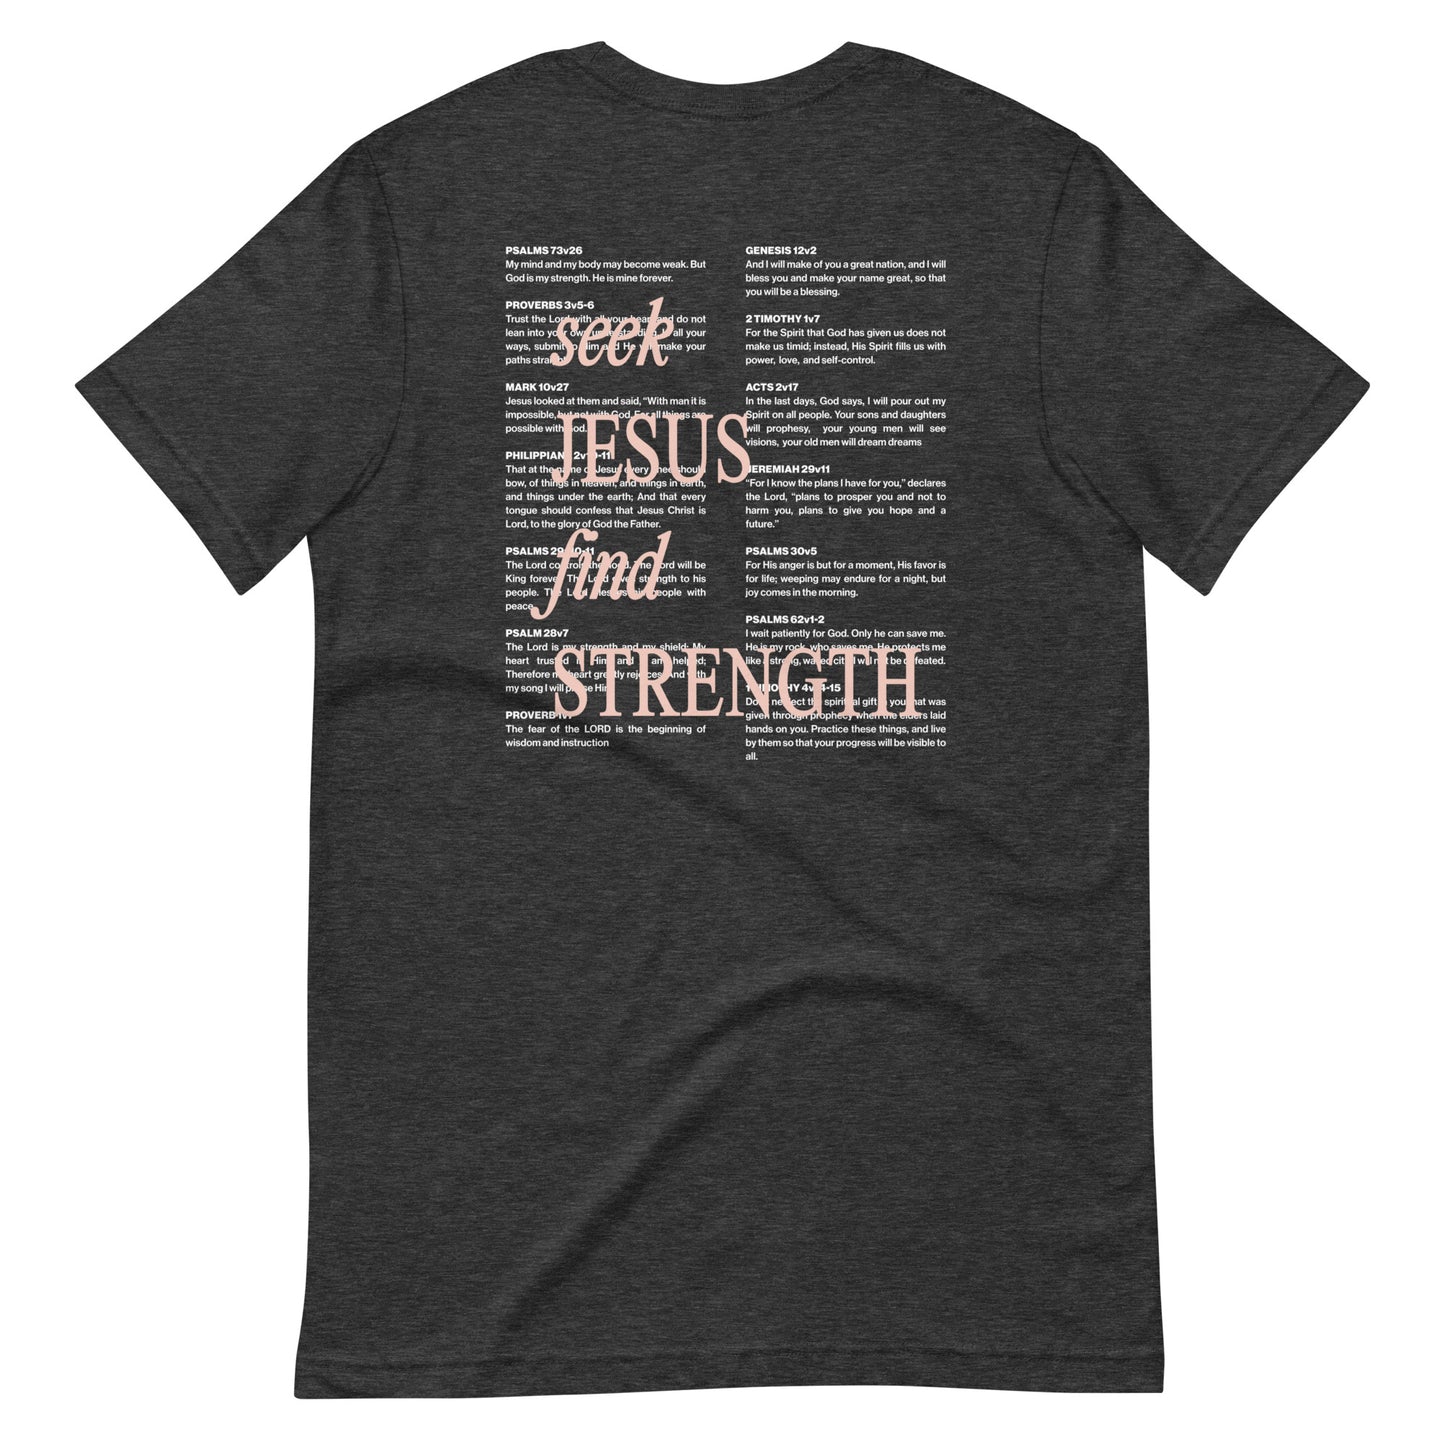 Seek Jesus, Find Strength Tee